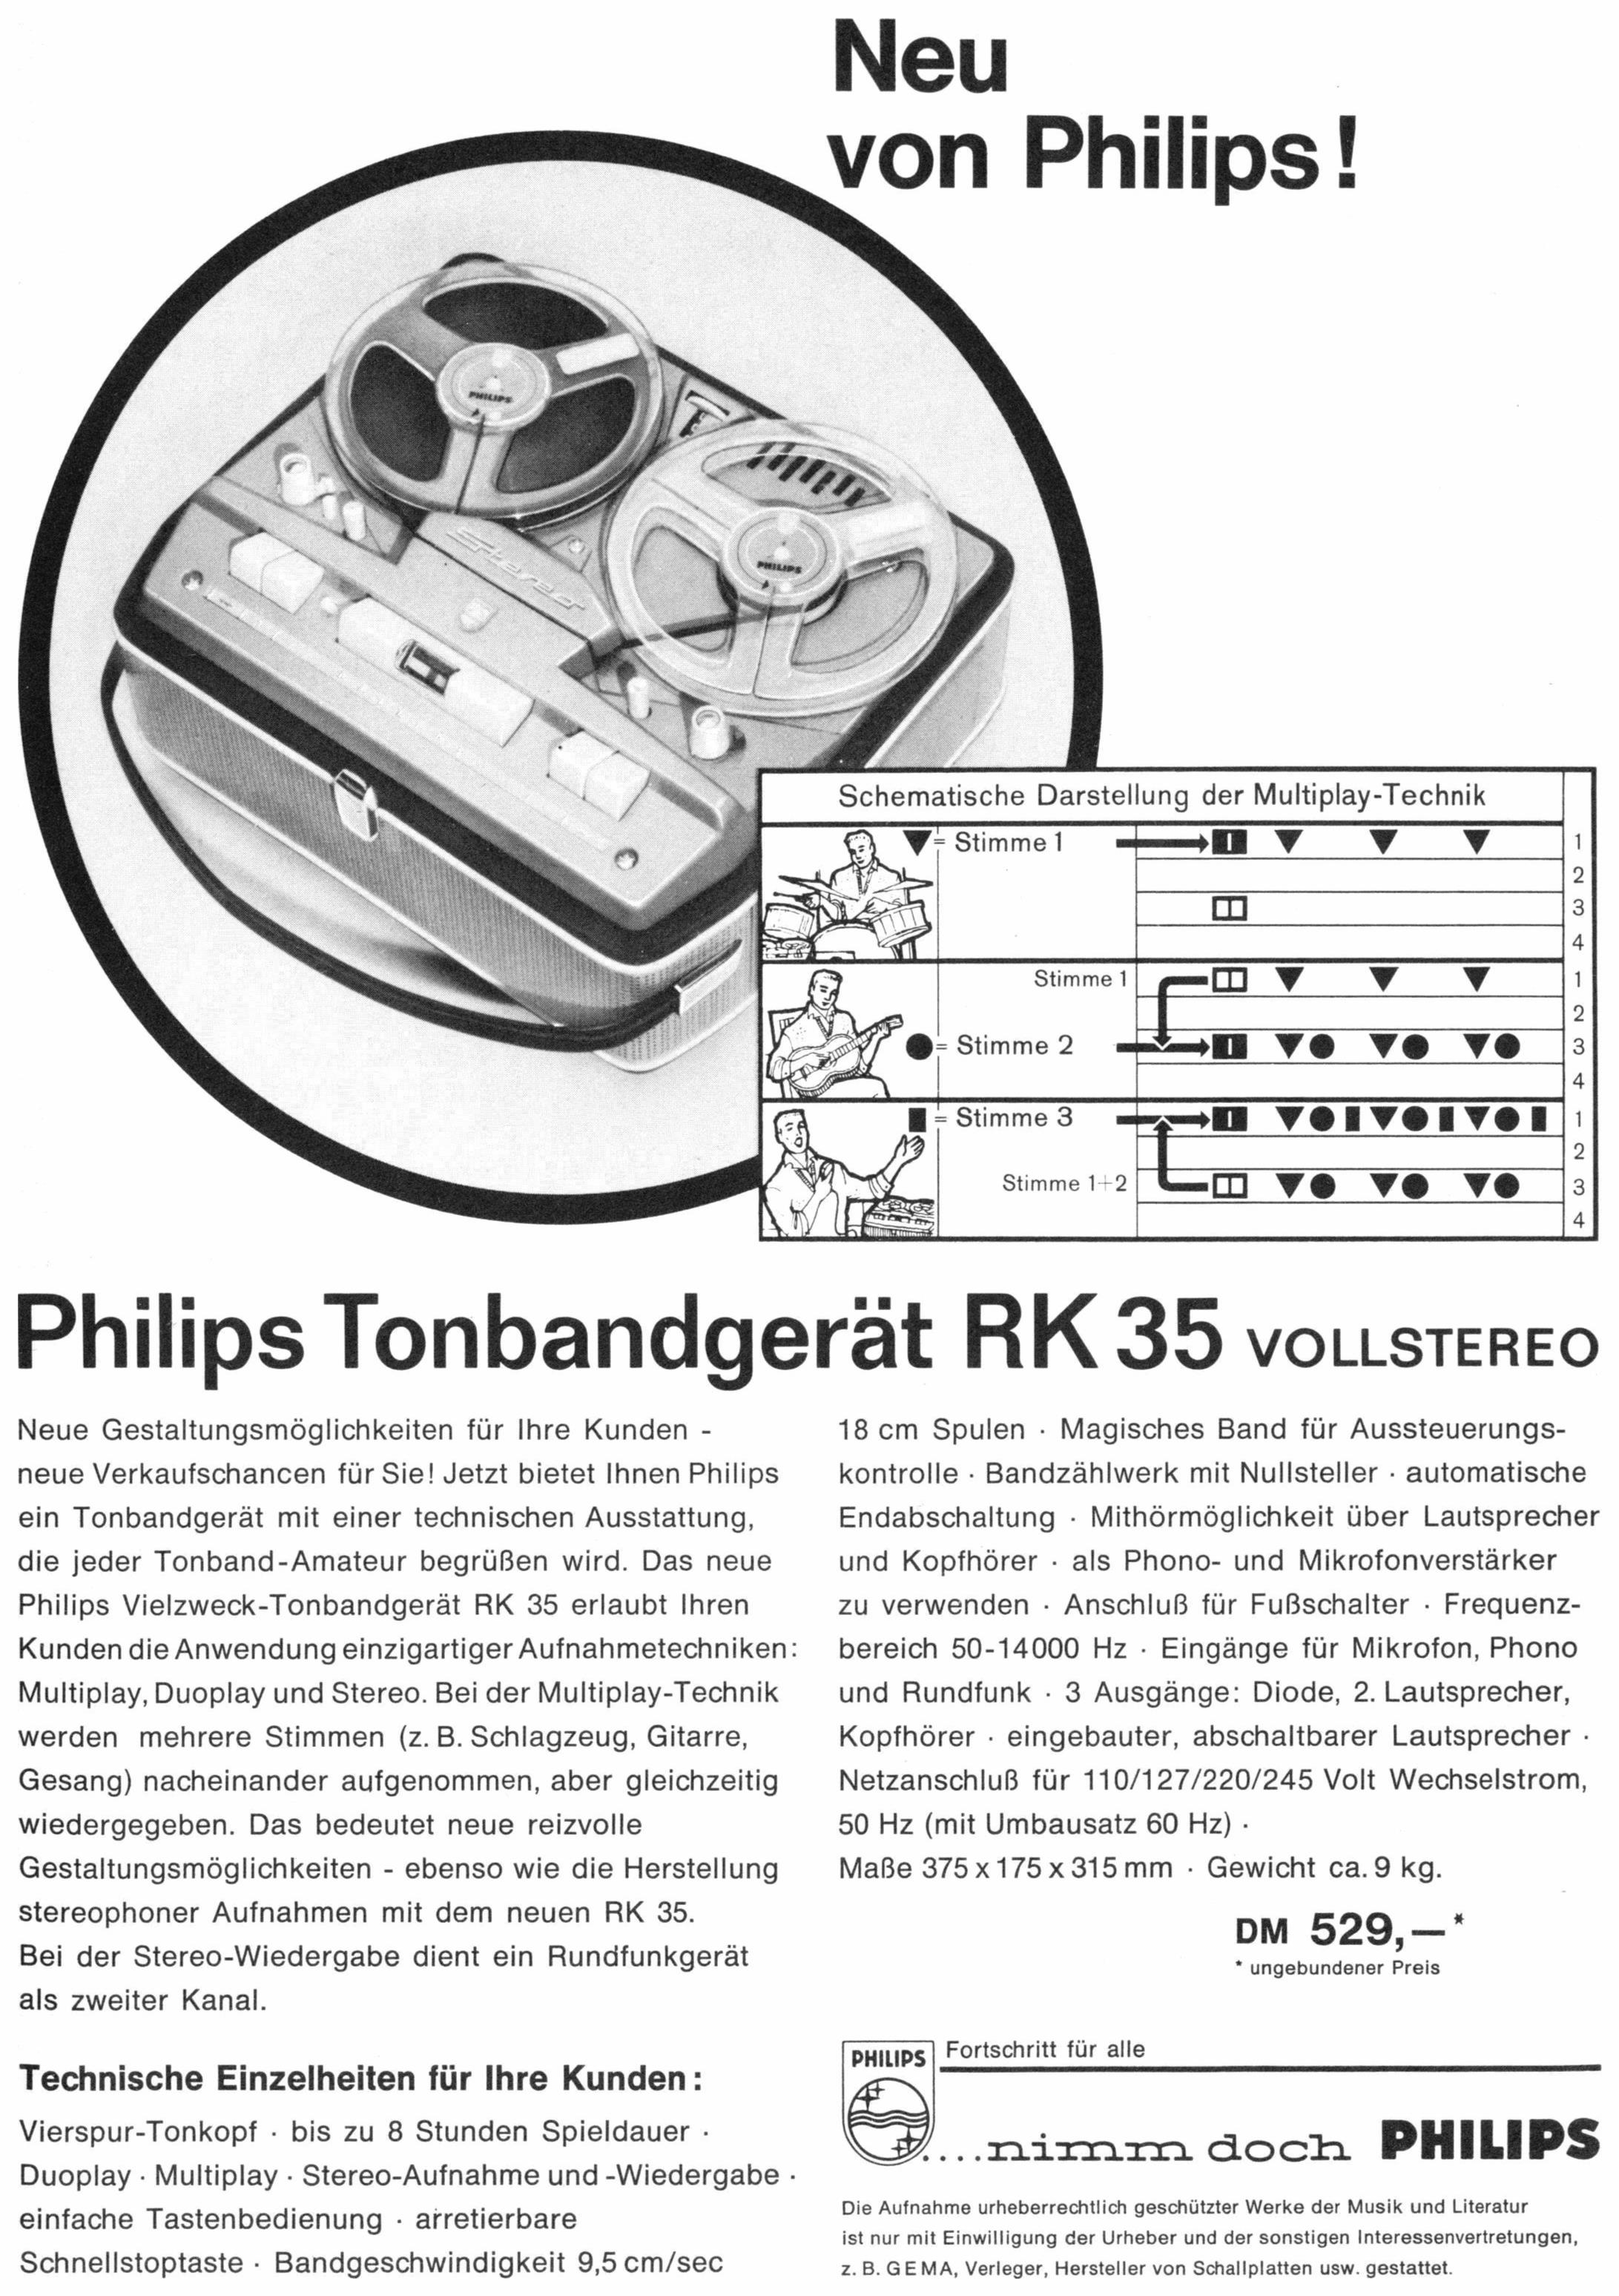 Philips 1961 05.jpg